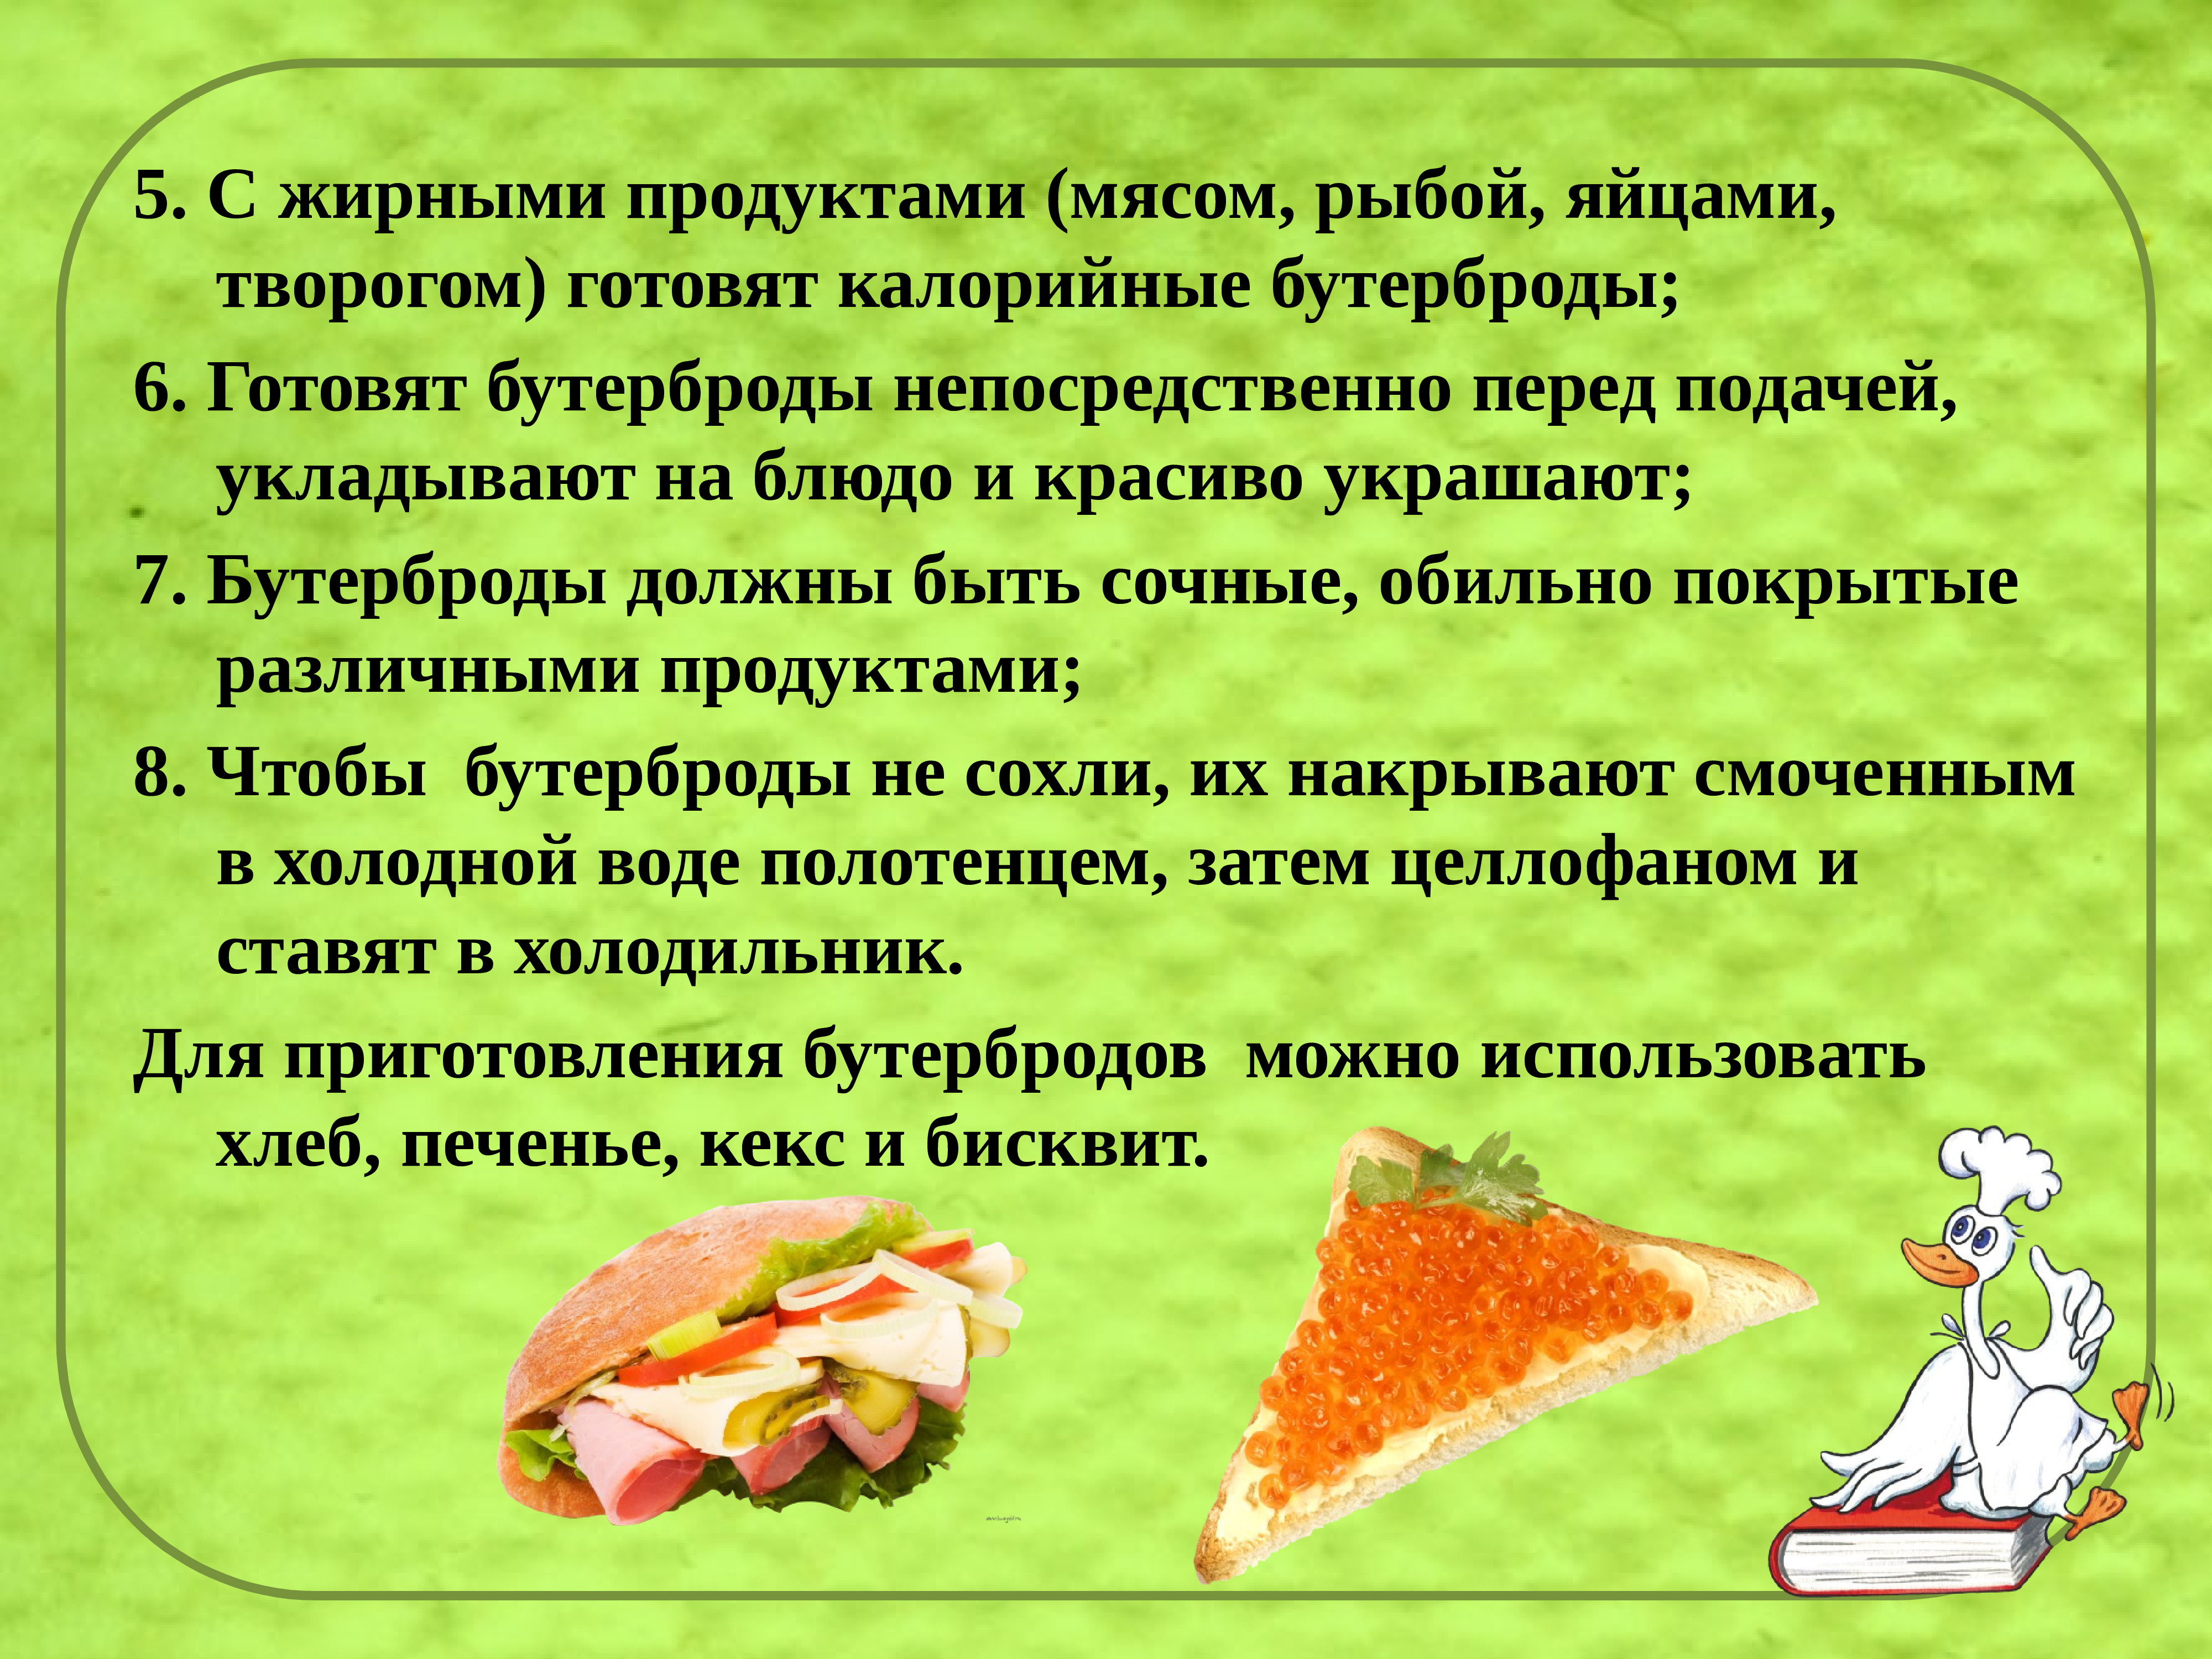 Описание сэндвича. Технология приготовления бутербродов. Техноголия поиготовления ьу. Технология приготовления сэндвича. Бутерброды презентация.